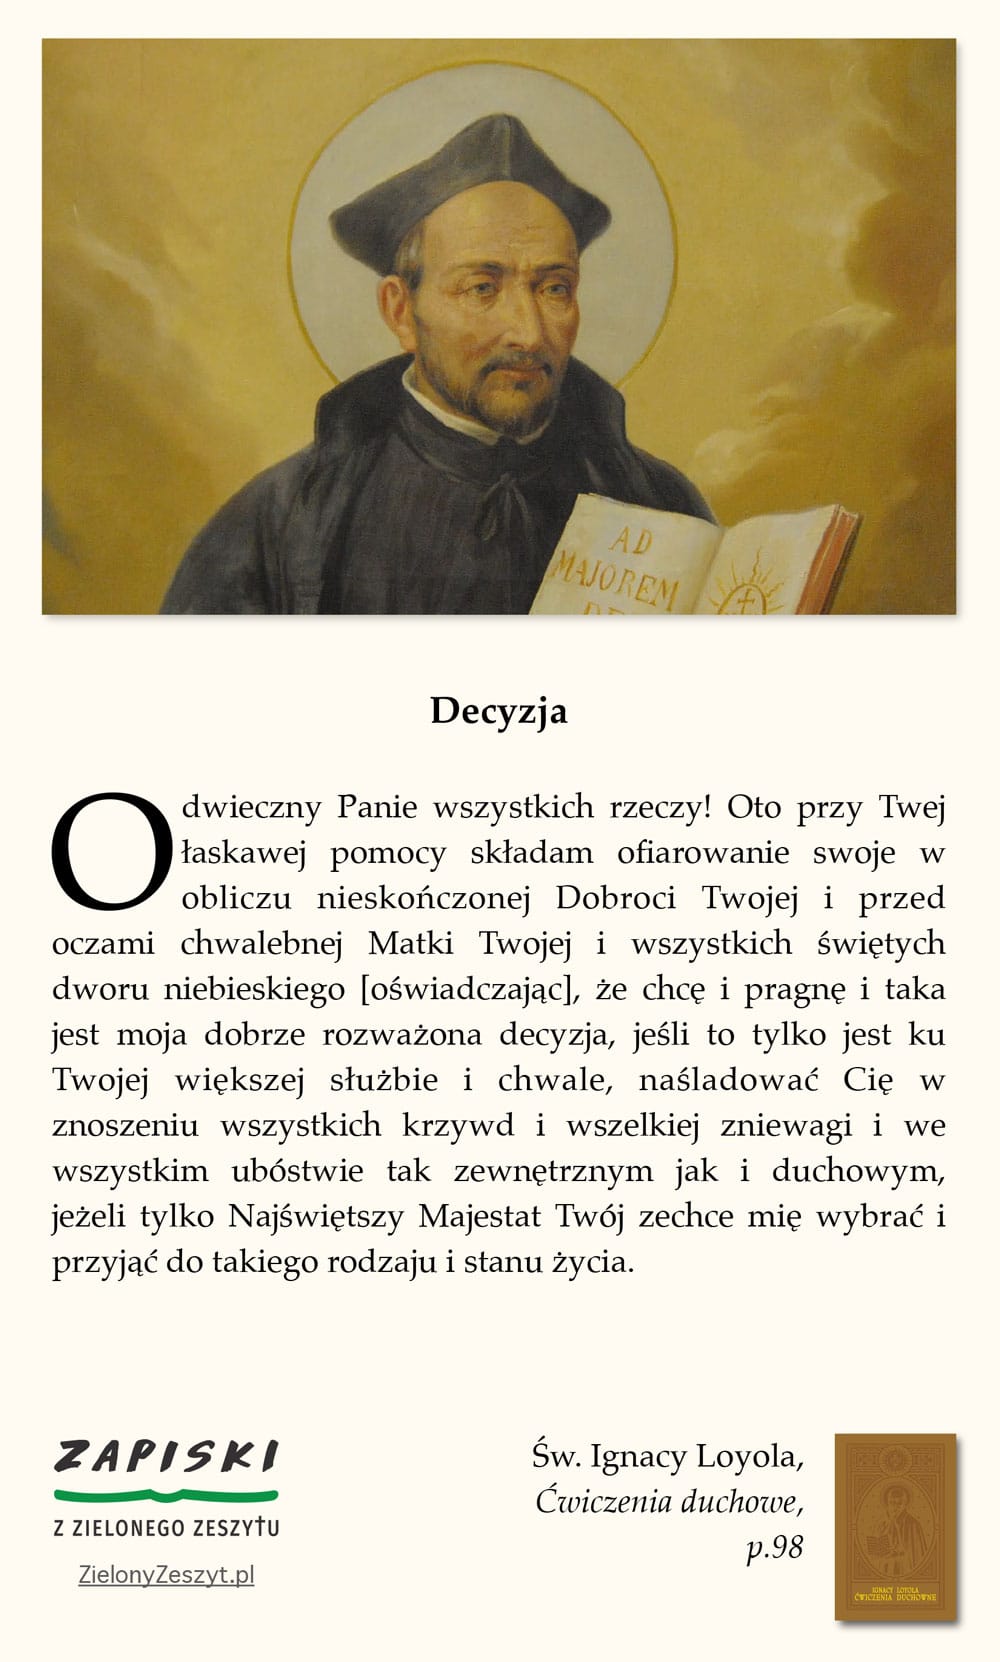 Św. Ignacy Loyola, Ćwiczenia duchowe, p. 98 (Decyzja)